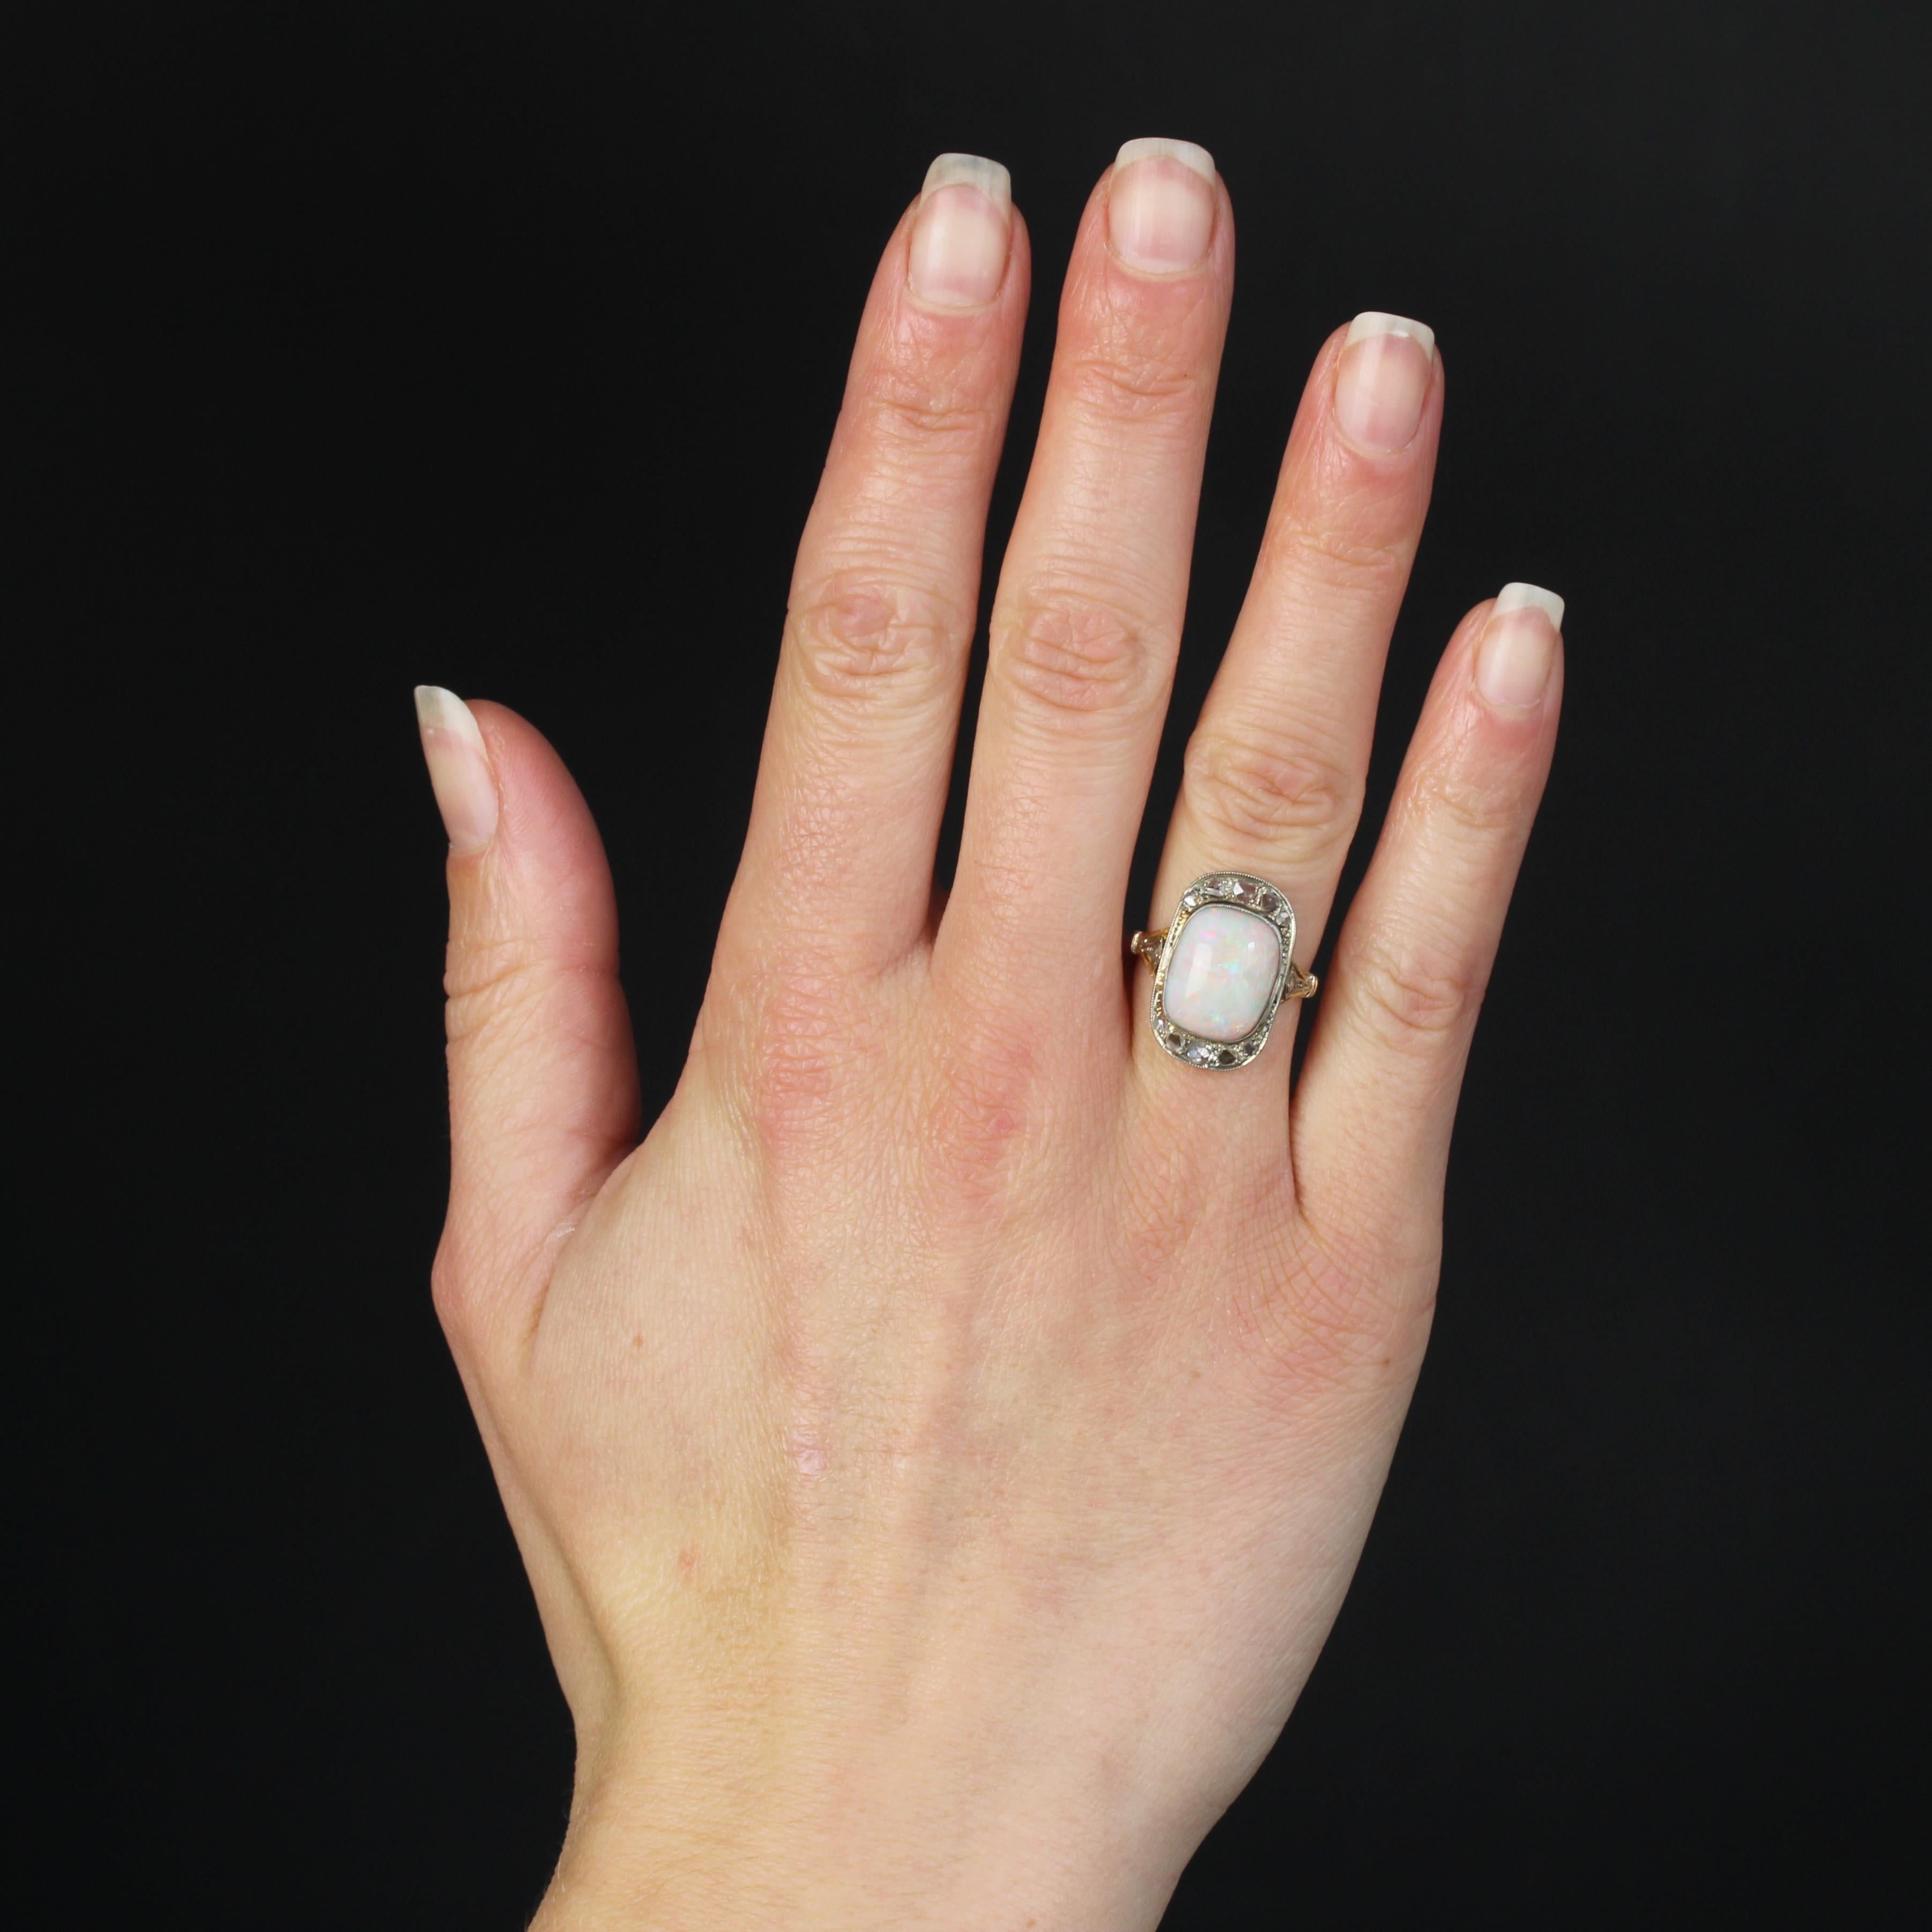 Ring aus 18 Karat Gelbgold und Platin.
Dieser elegante Opalring im Art-Déco-Stil ist mit Diamanten im Rosenschliff besetzt und hat eine rechteckige Form mit abgerundeten Ecken. In der Mitte ist ein australischer Cabochon-Opal gefasst. Auf beiden